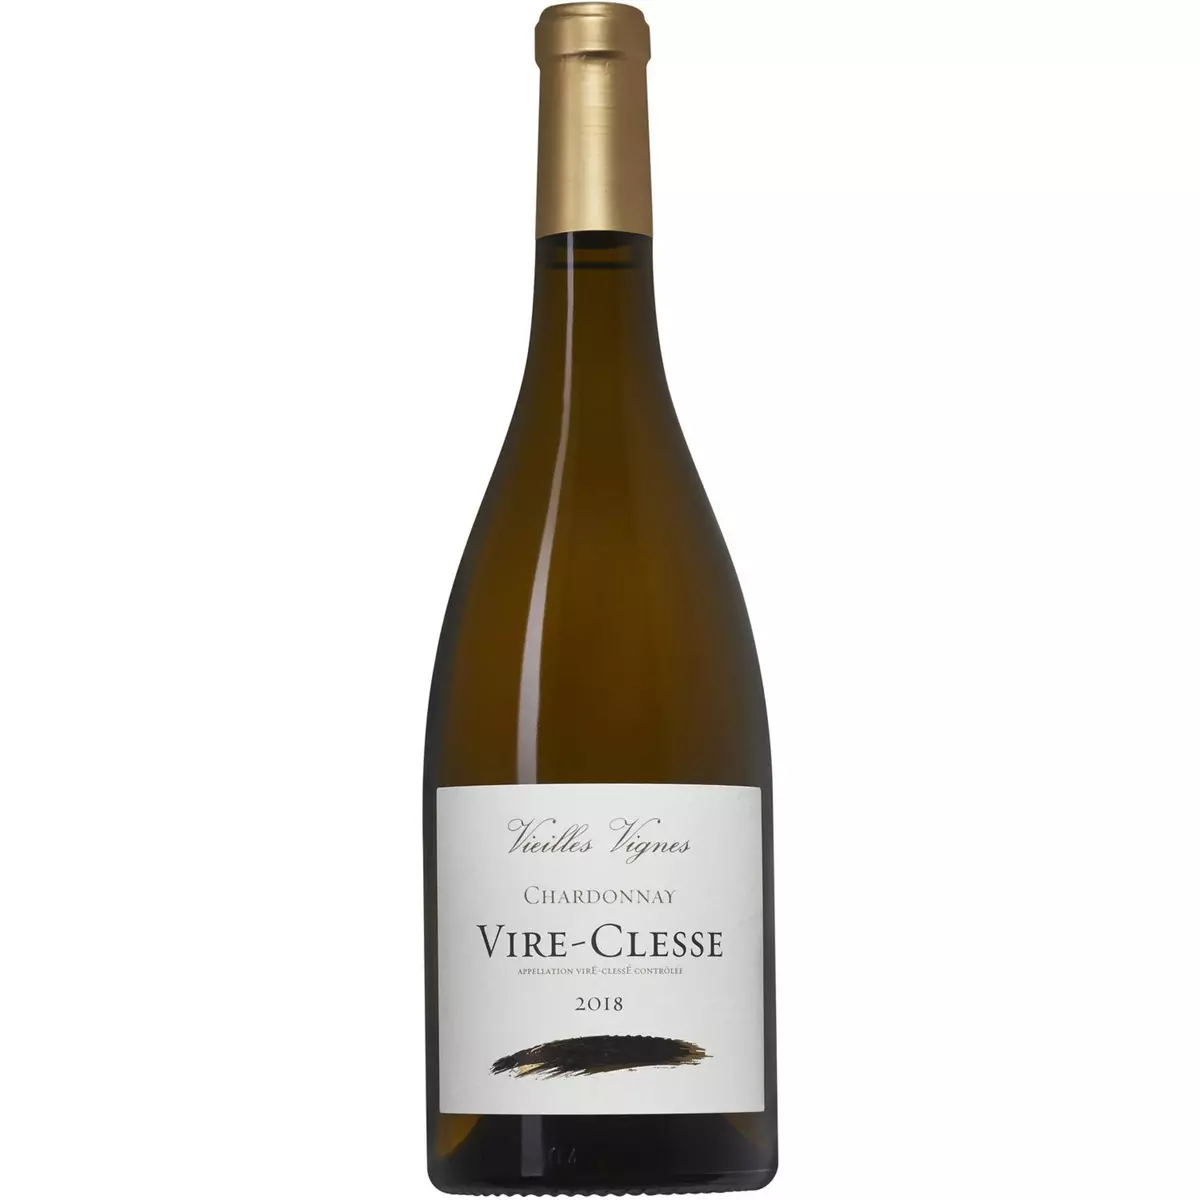 Viré-Clessé vieilles vignes Chardonnay 2018 blanc 75cl